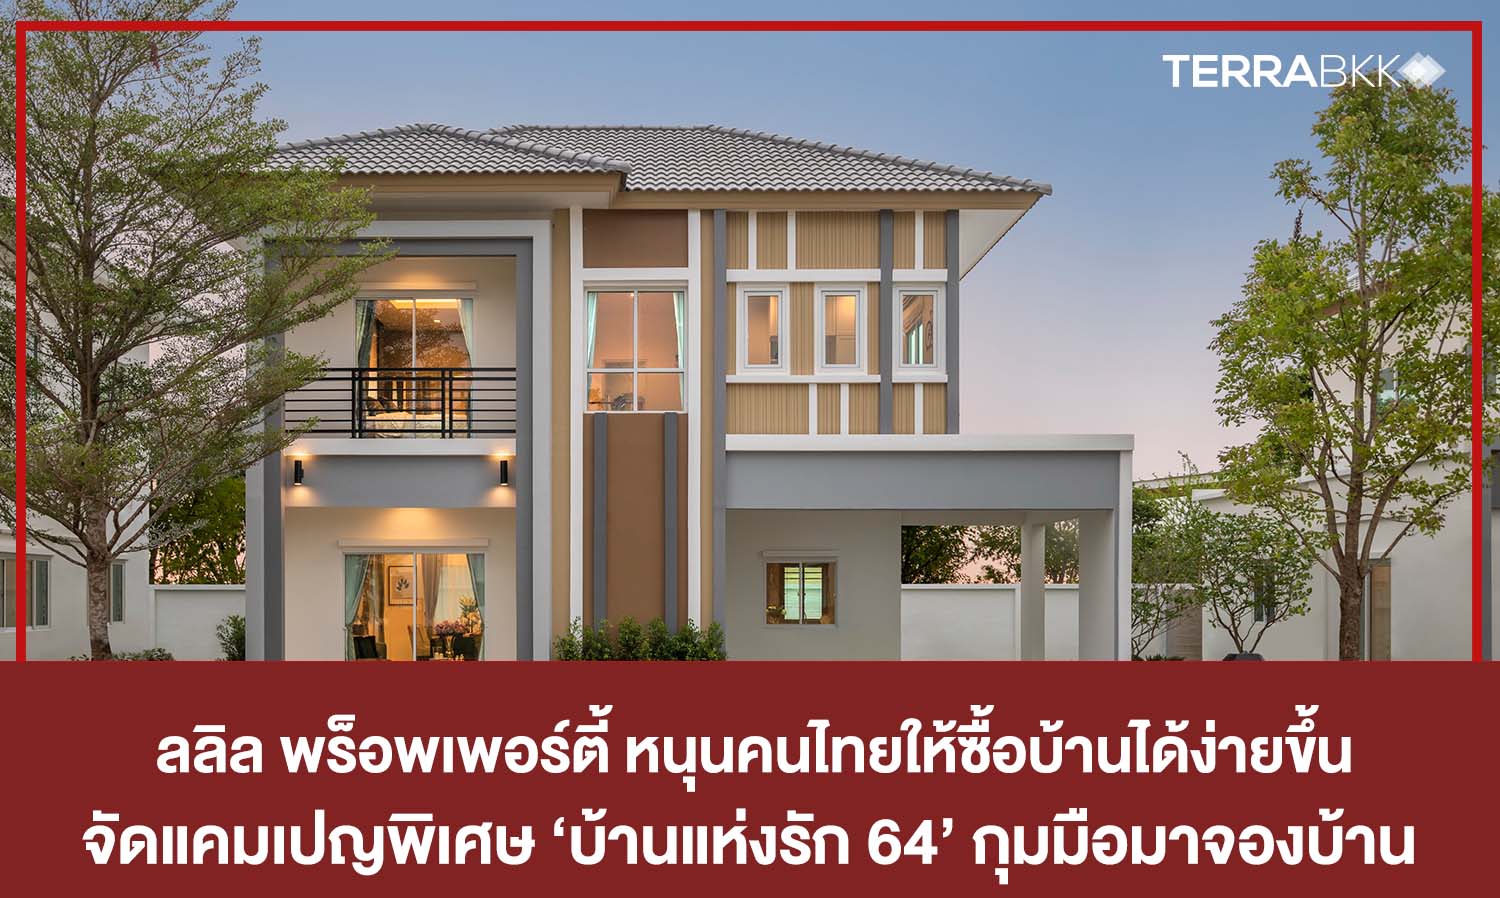 13-14 ก.พ. นี้ ลลิล พร็อพเพอร์ตี้ หนุนคนไทยให้ซื้อบ้านได้ง่ายขึ้น  จัดแคมเปญพิเศษ ‘บ้านแห่งรัก 64’ กุมมือมาจองบ้าน 